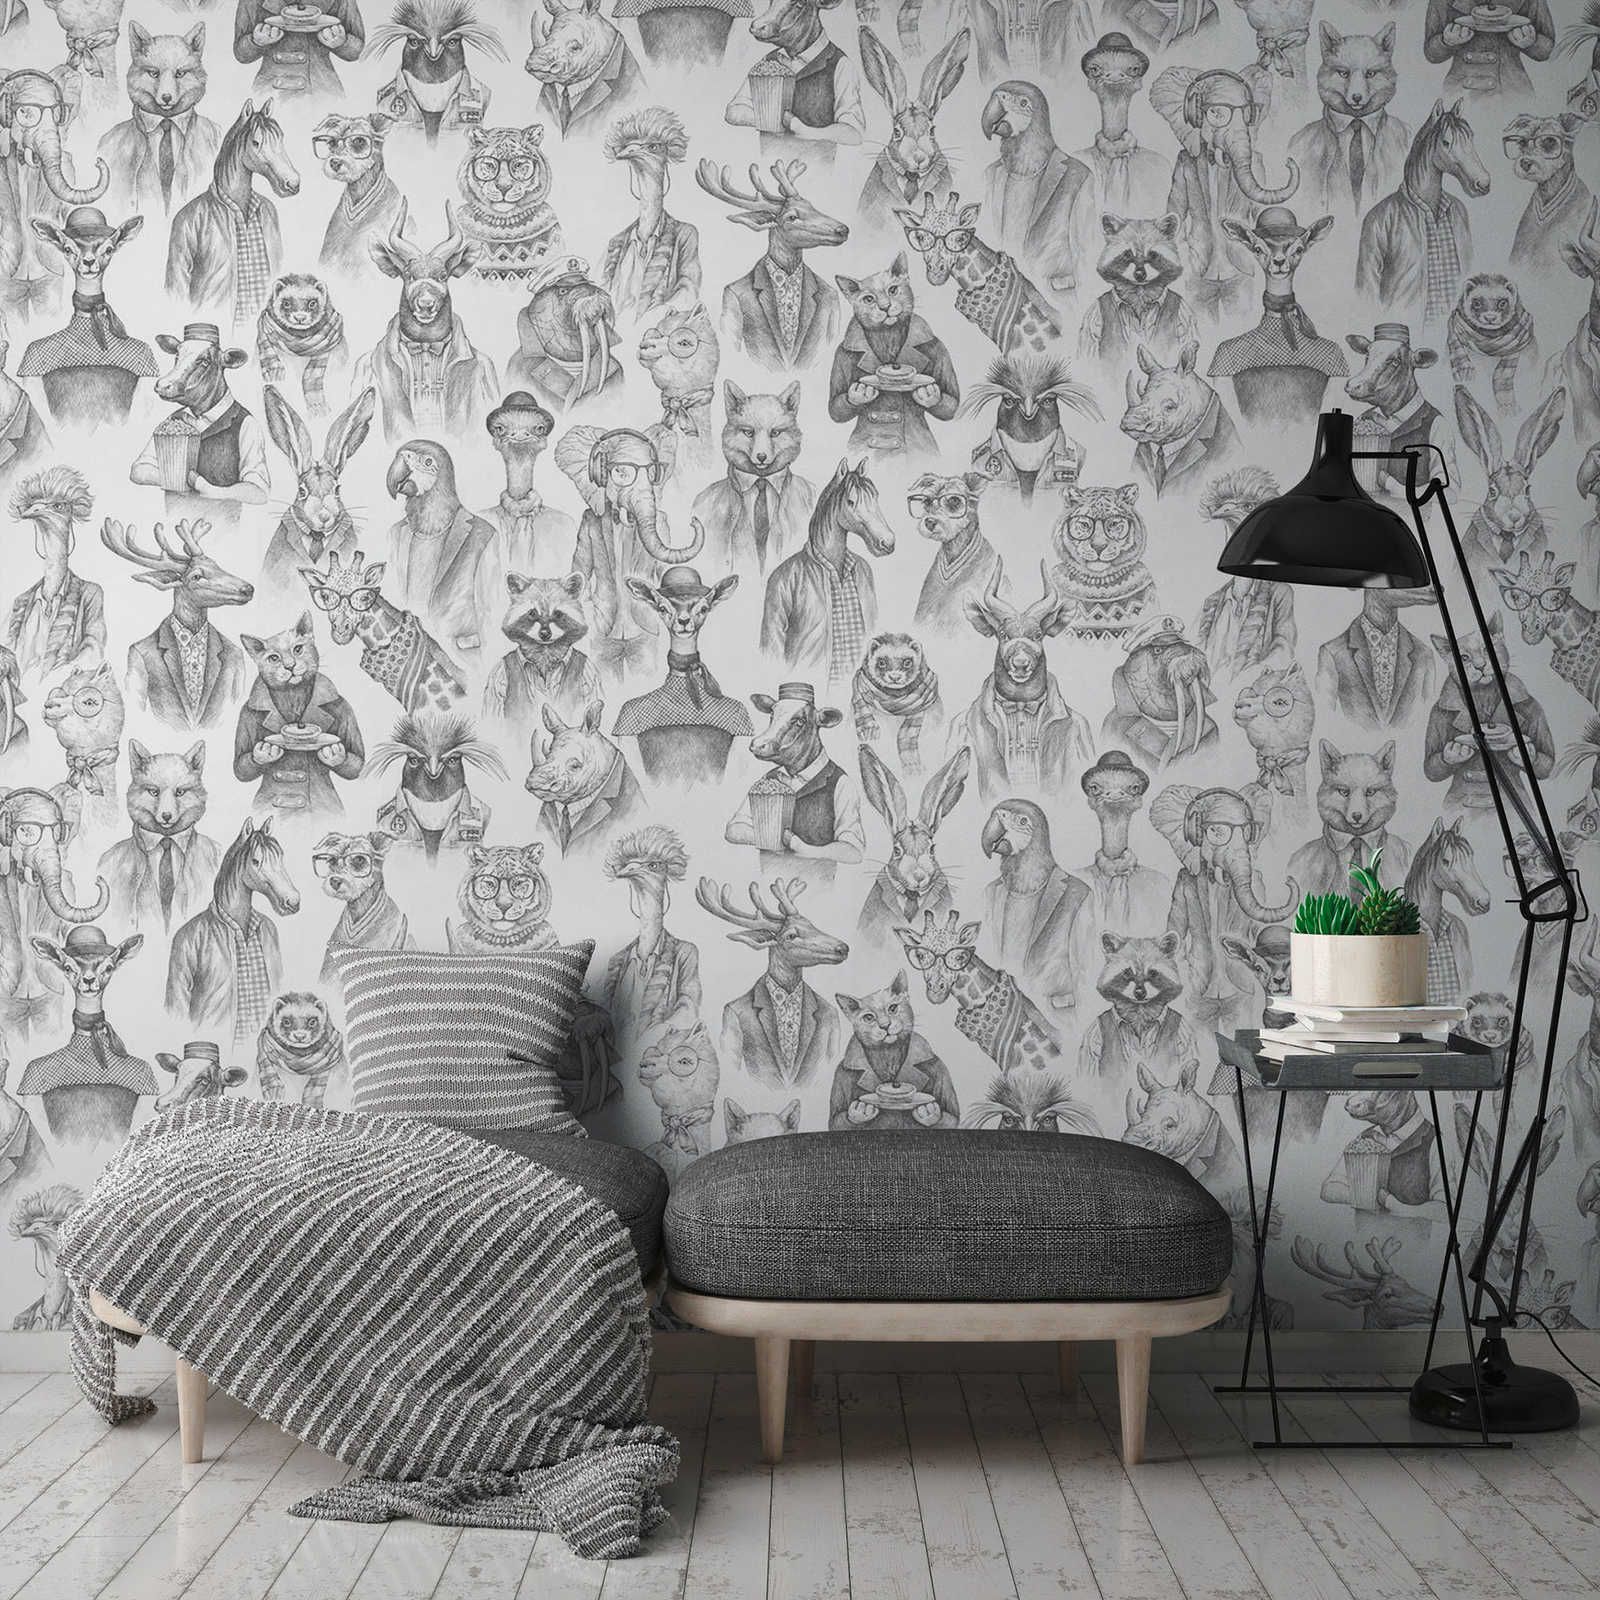 Papel pintado no tejido fabulous animal world de New-Walls - blanco y negro
